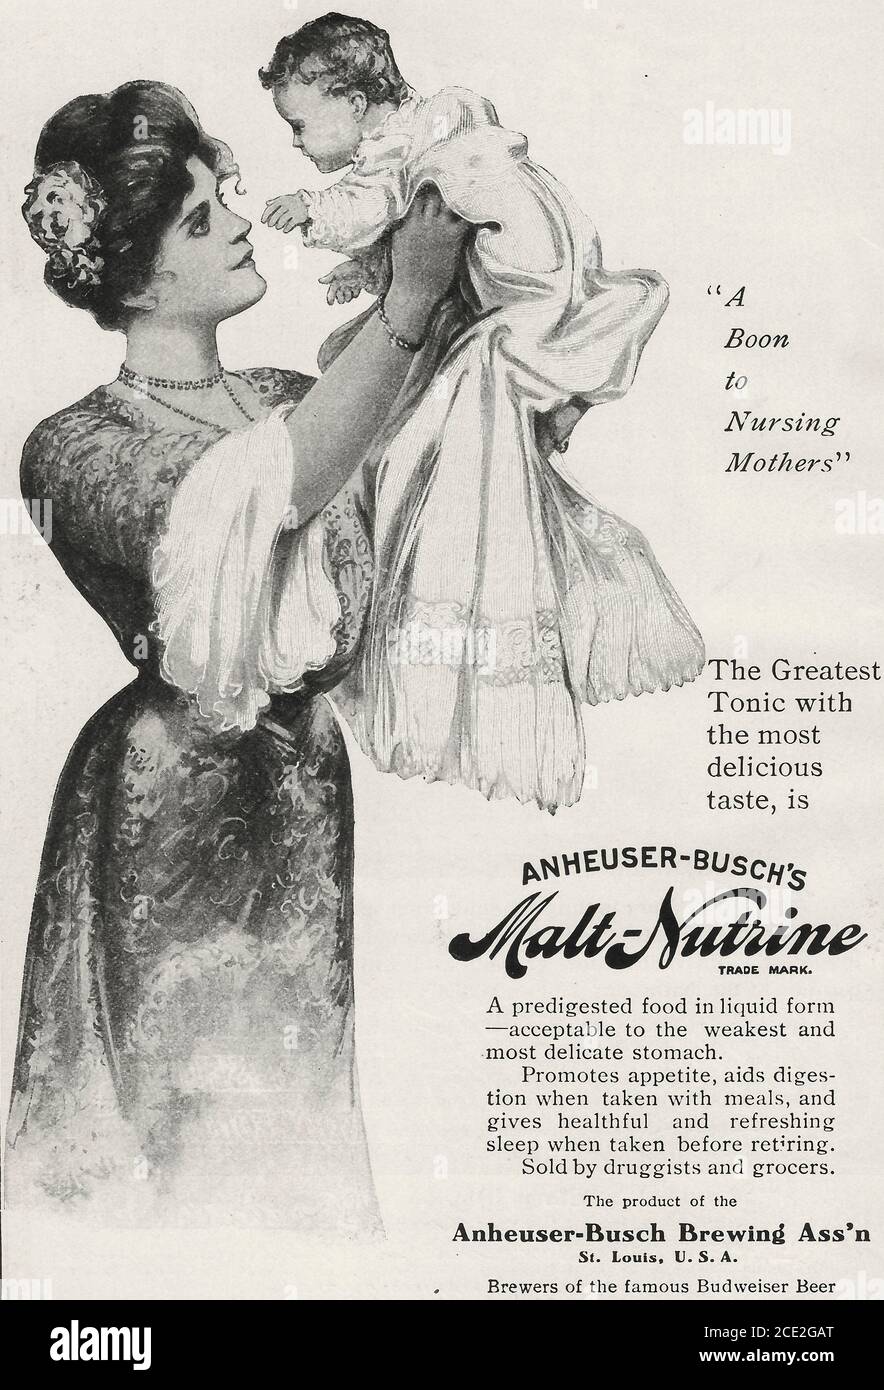 Anheuser-Busch Malt Nutrine - UNE aubaine pour les mères allaitantes - Publicité, vers 1920 Banque D'Images